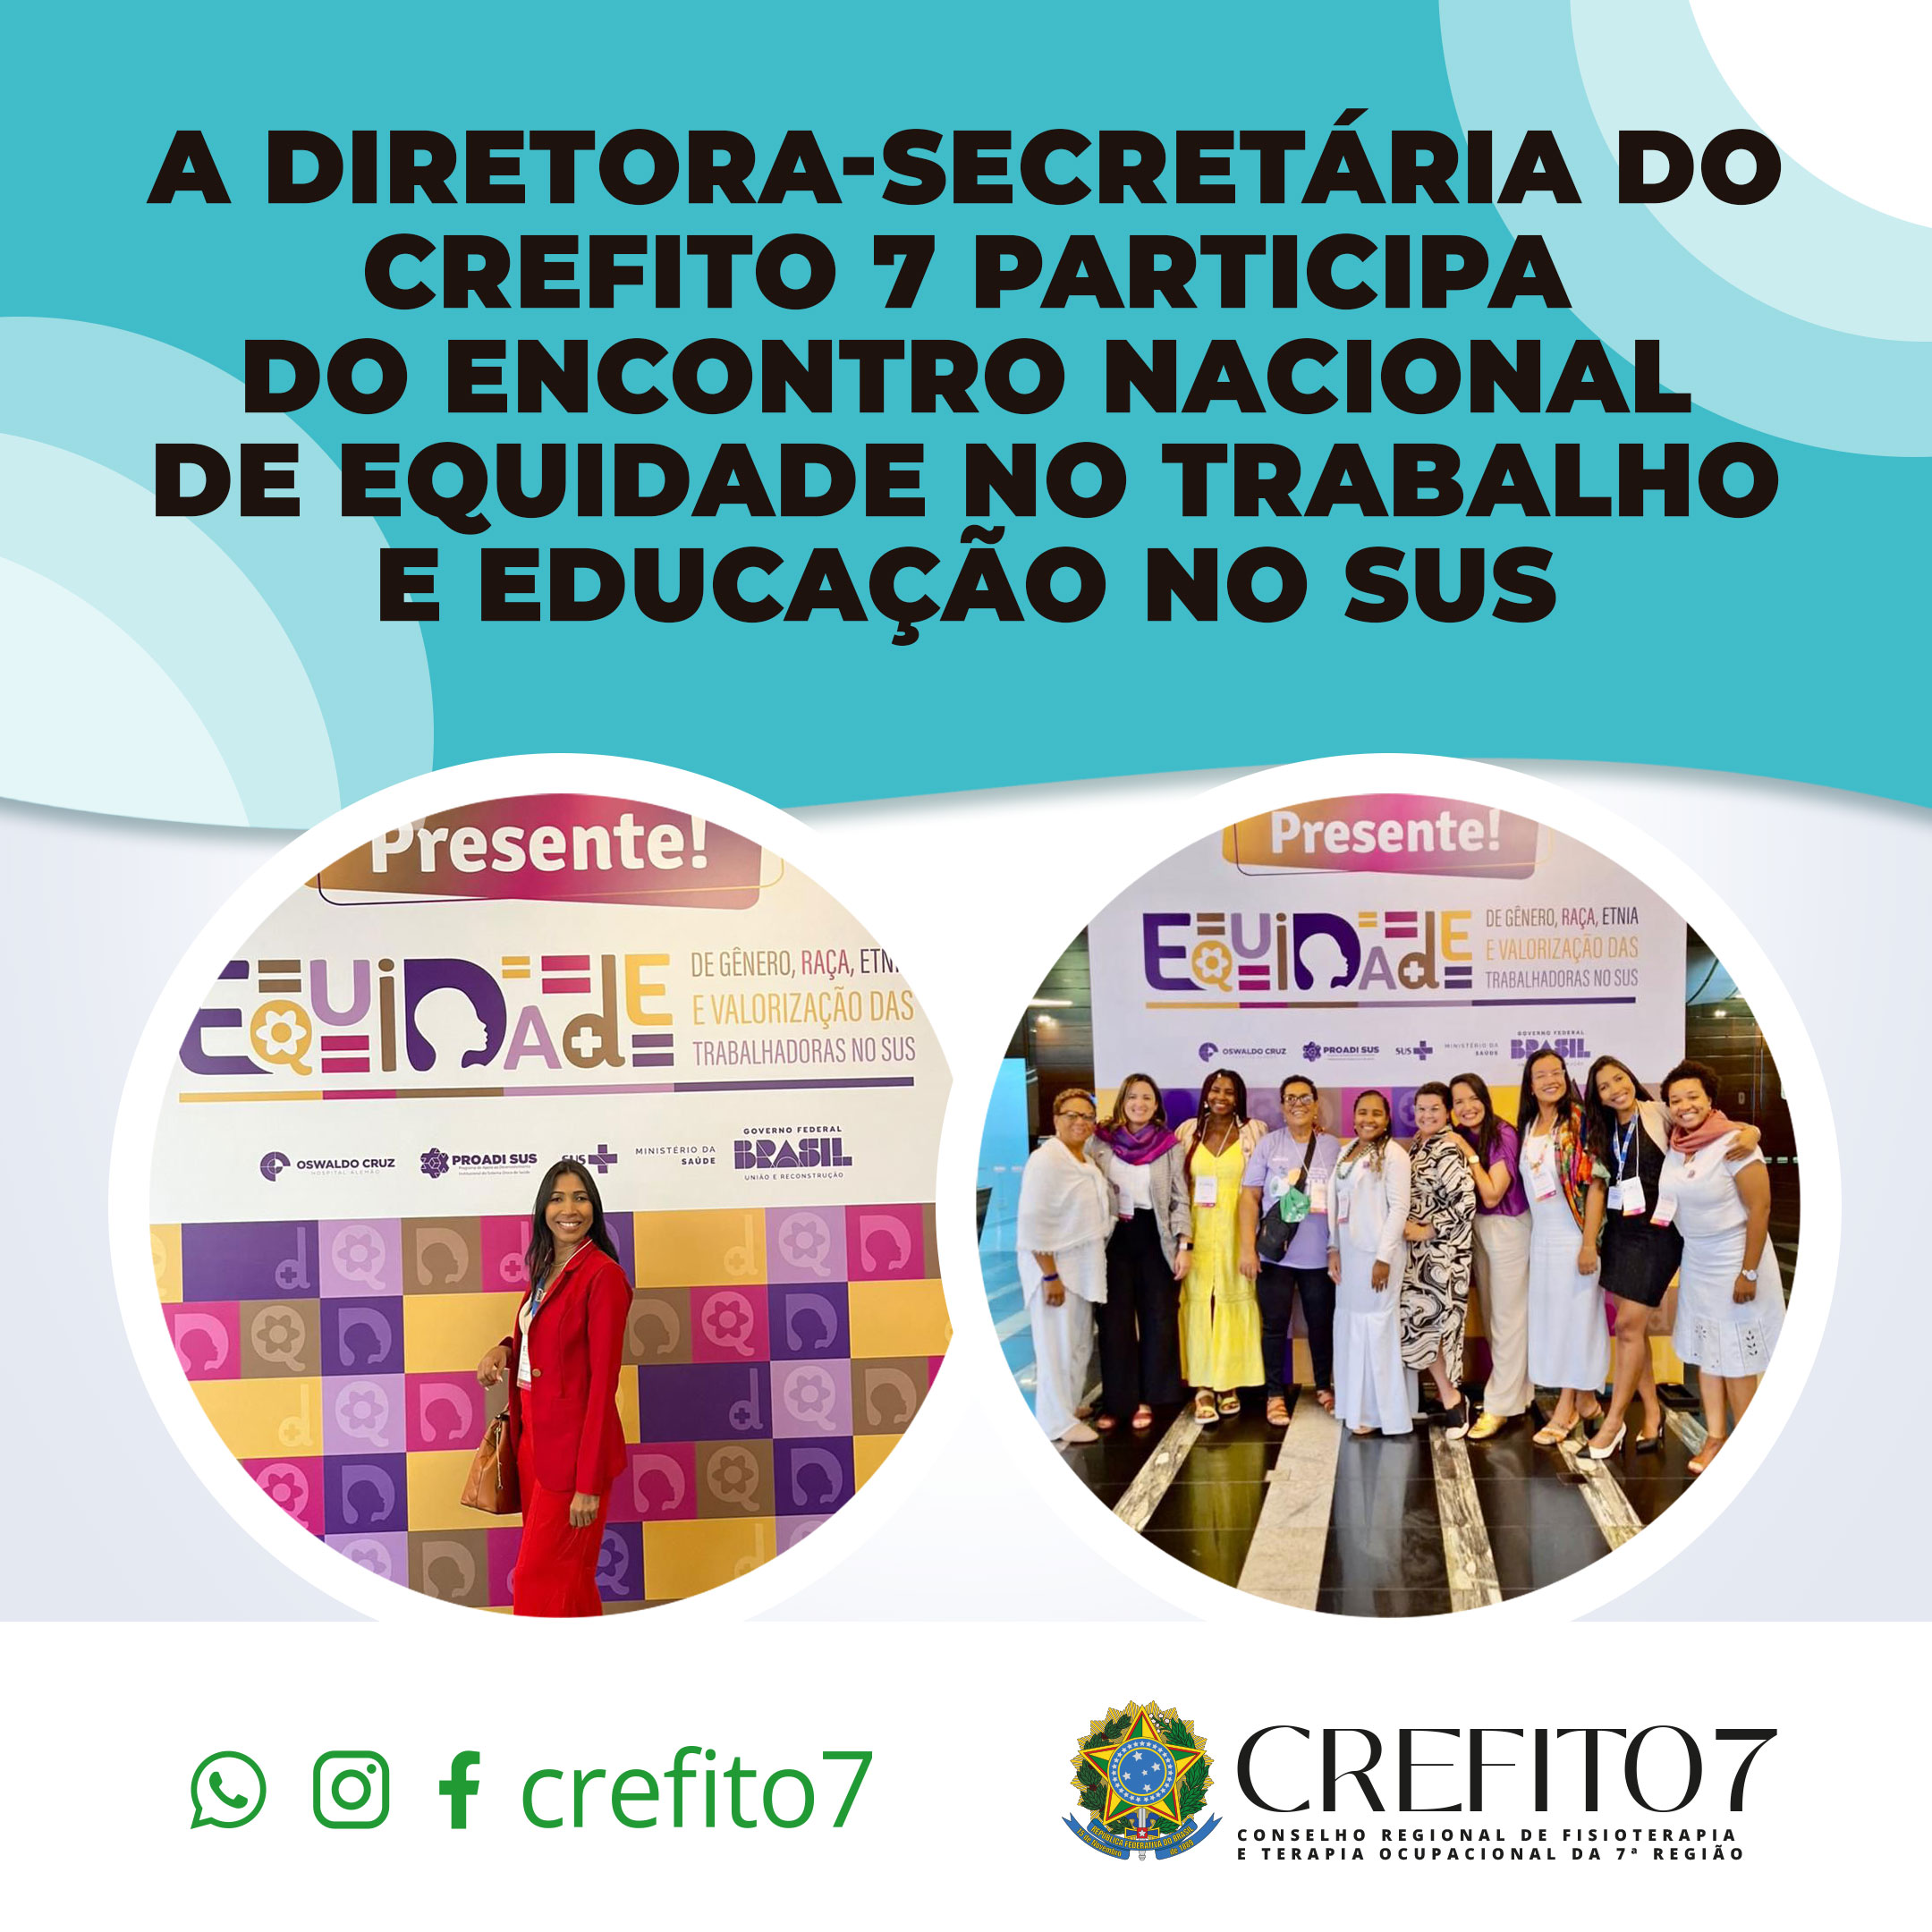 DIRETORA-SECRETÁRIA DO CREFITO-7 PARTICIPA DO ENCONTRO NACIONAL DE EQUIDADE NO TRABALHO E EDUCAÇÃO NO SUS